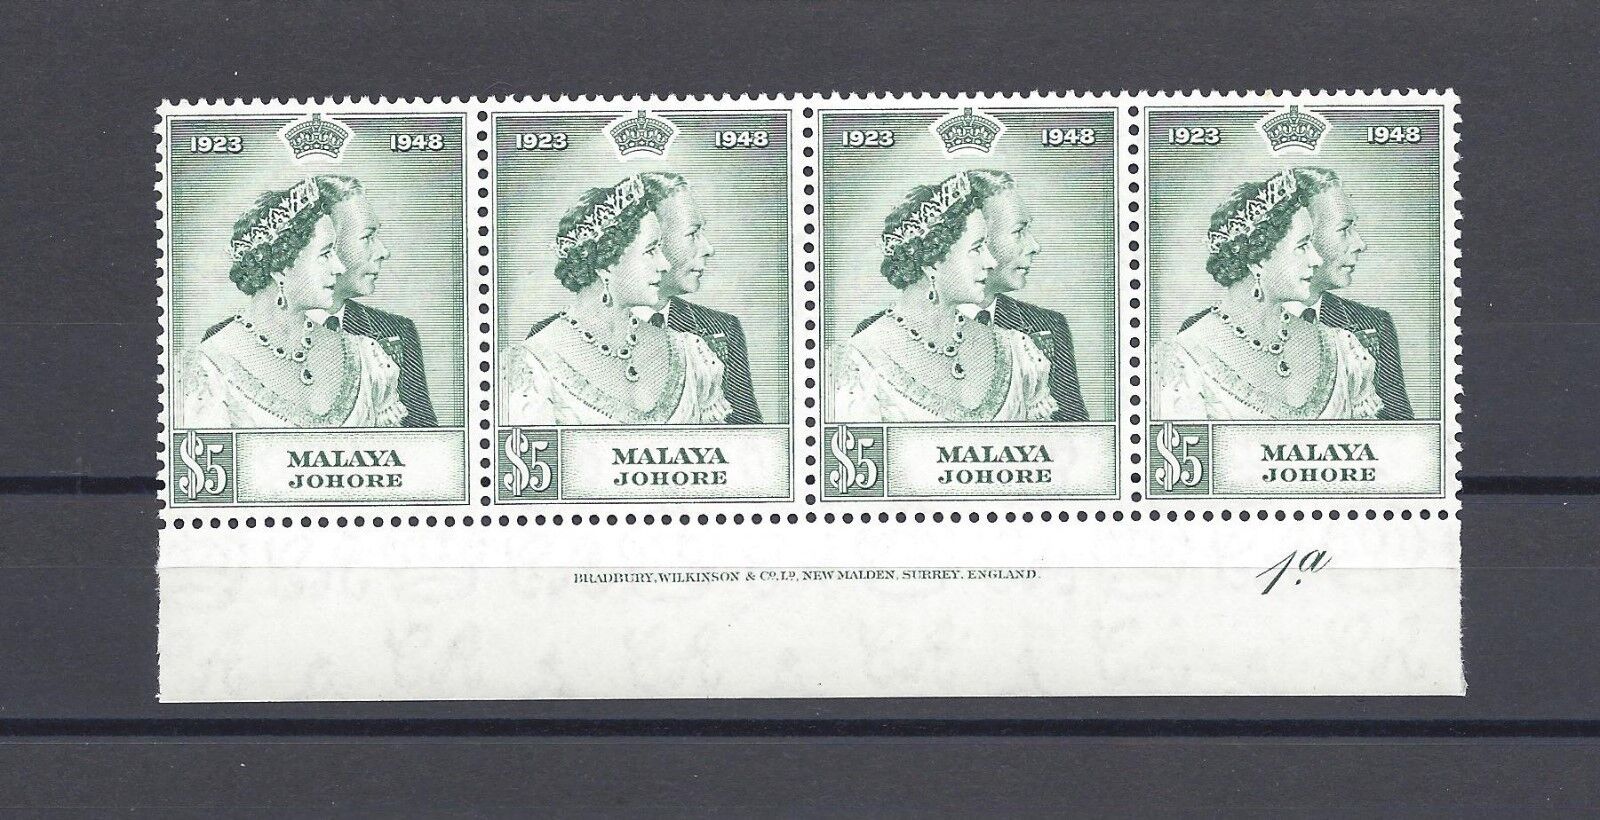 MALAYA/JOHORE 1948 SG 132 MNH Strip of 4 Cat £104